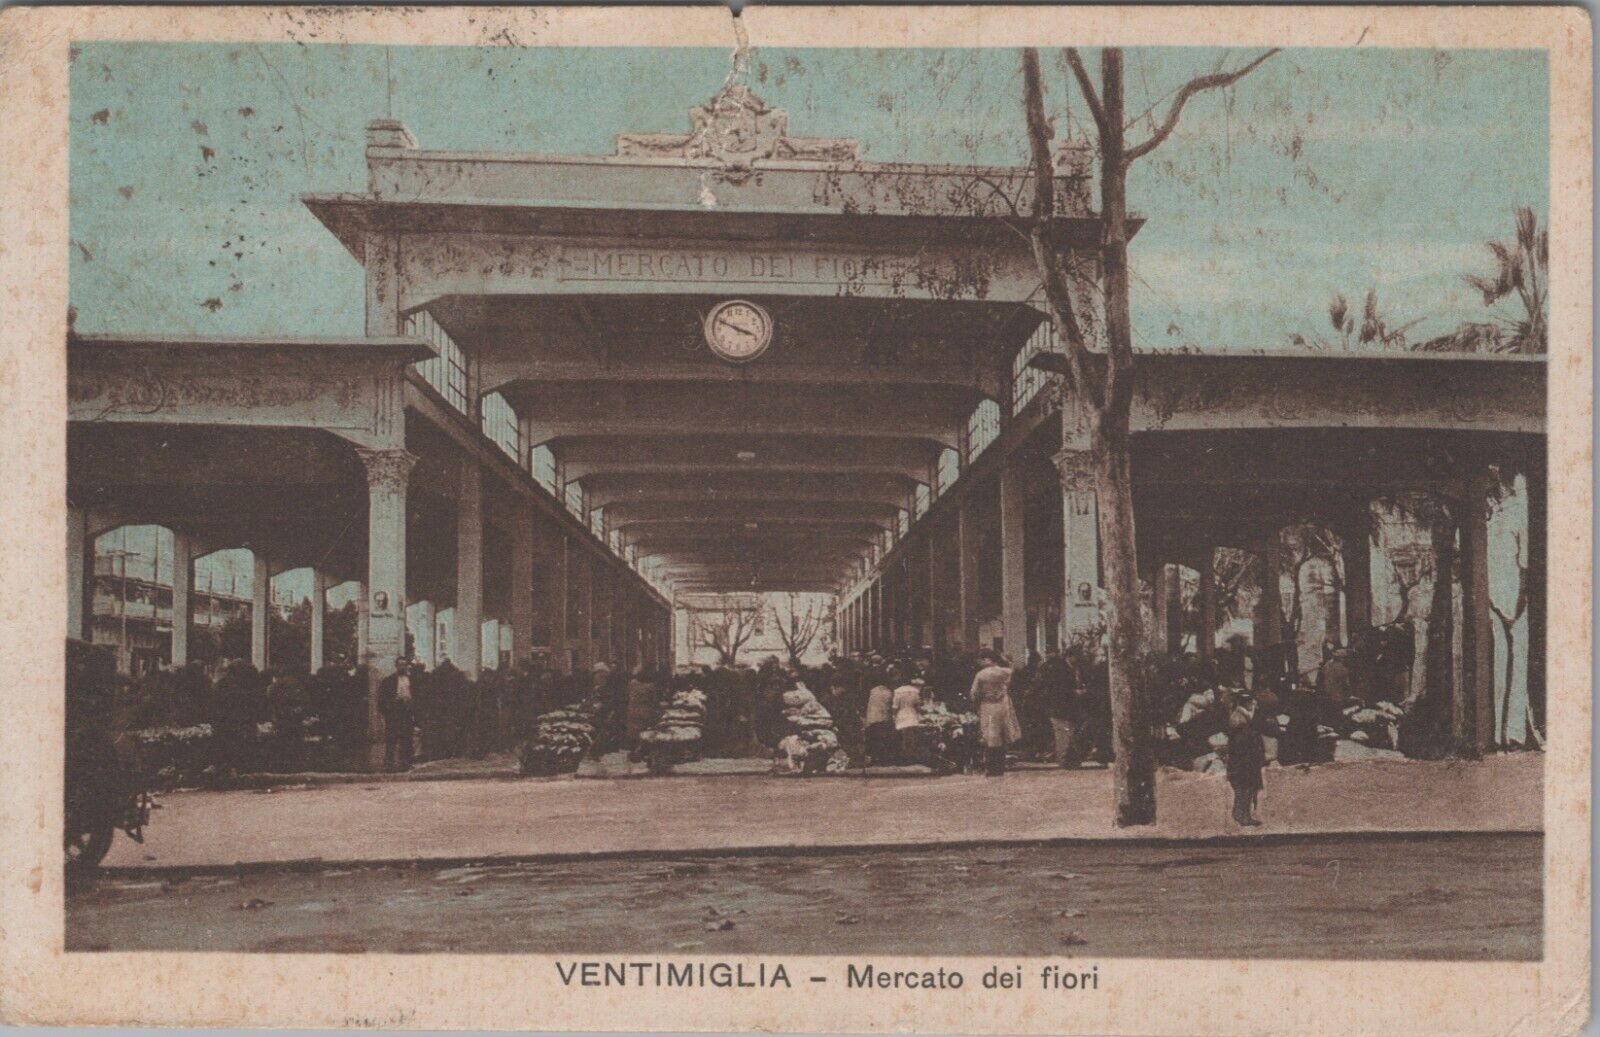 MR ALE Postcard Ventimiglia, ITALY - Flower Market 1938-PM B1857